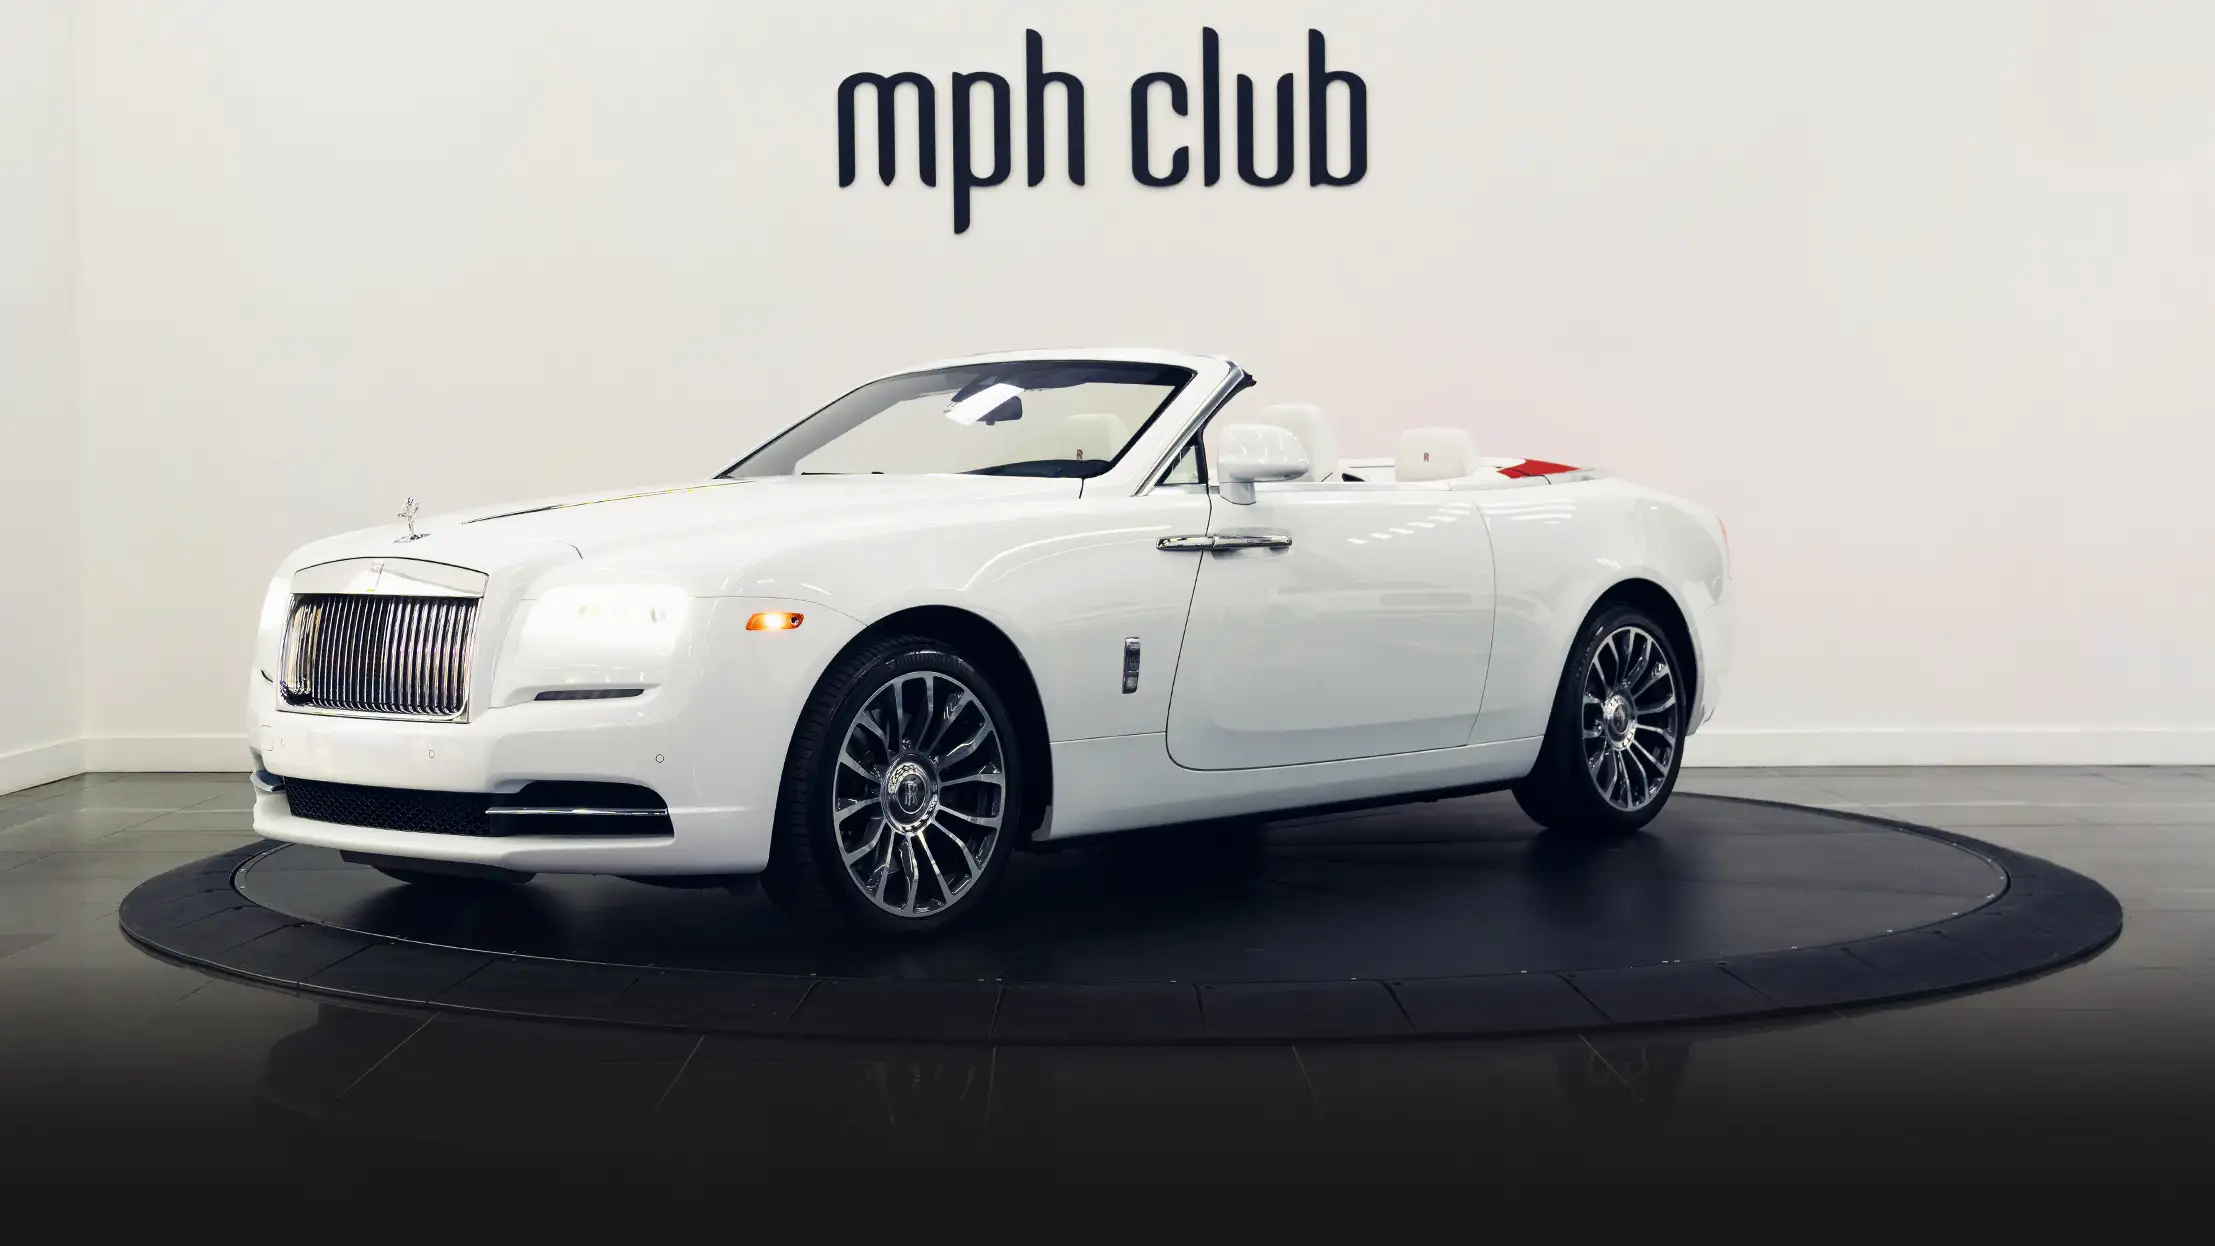 White on white Rolls Royce Dawn rental profile view mph club